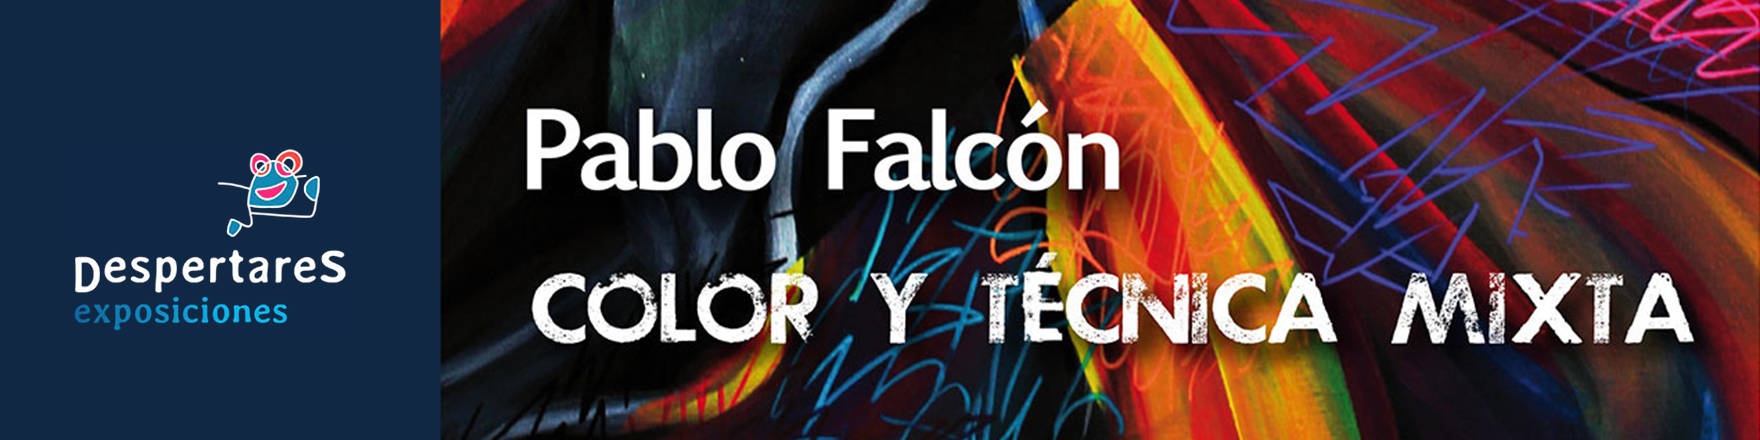 Pablo Falcón